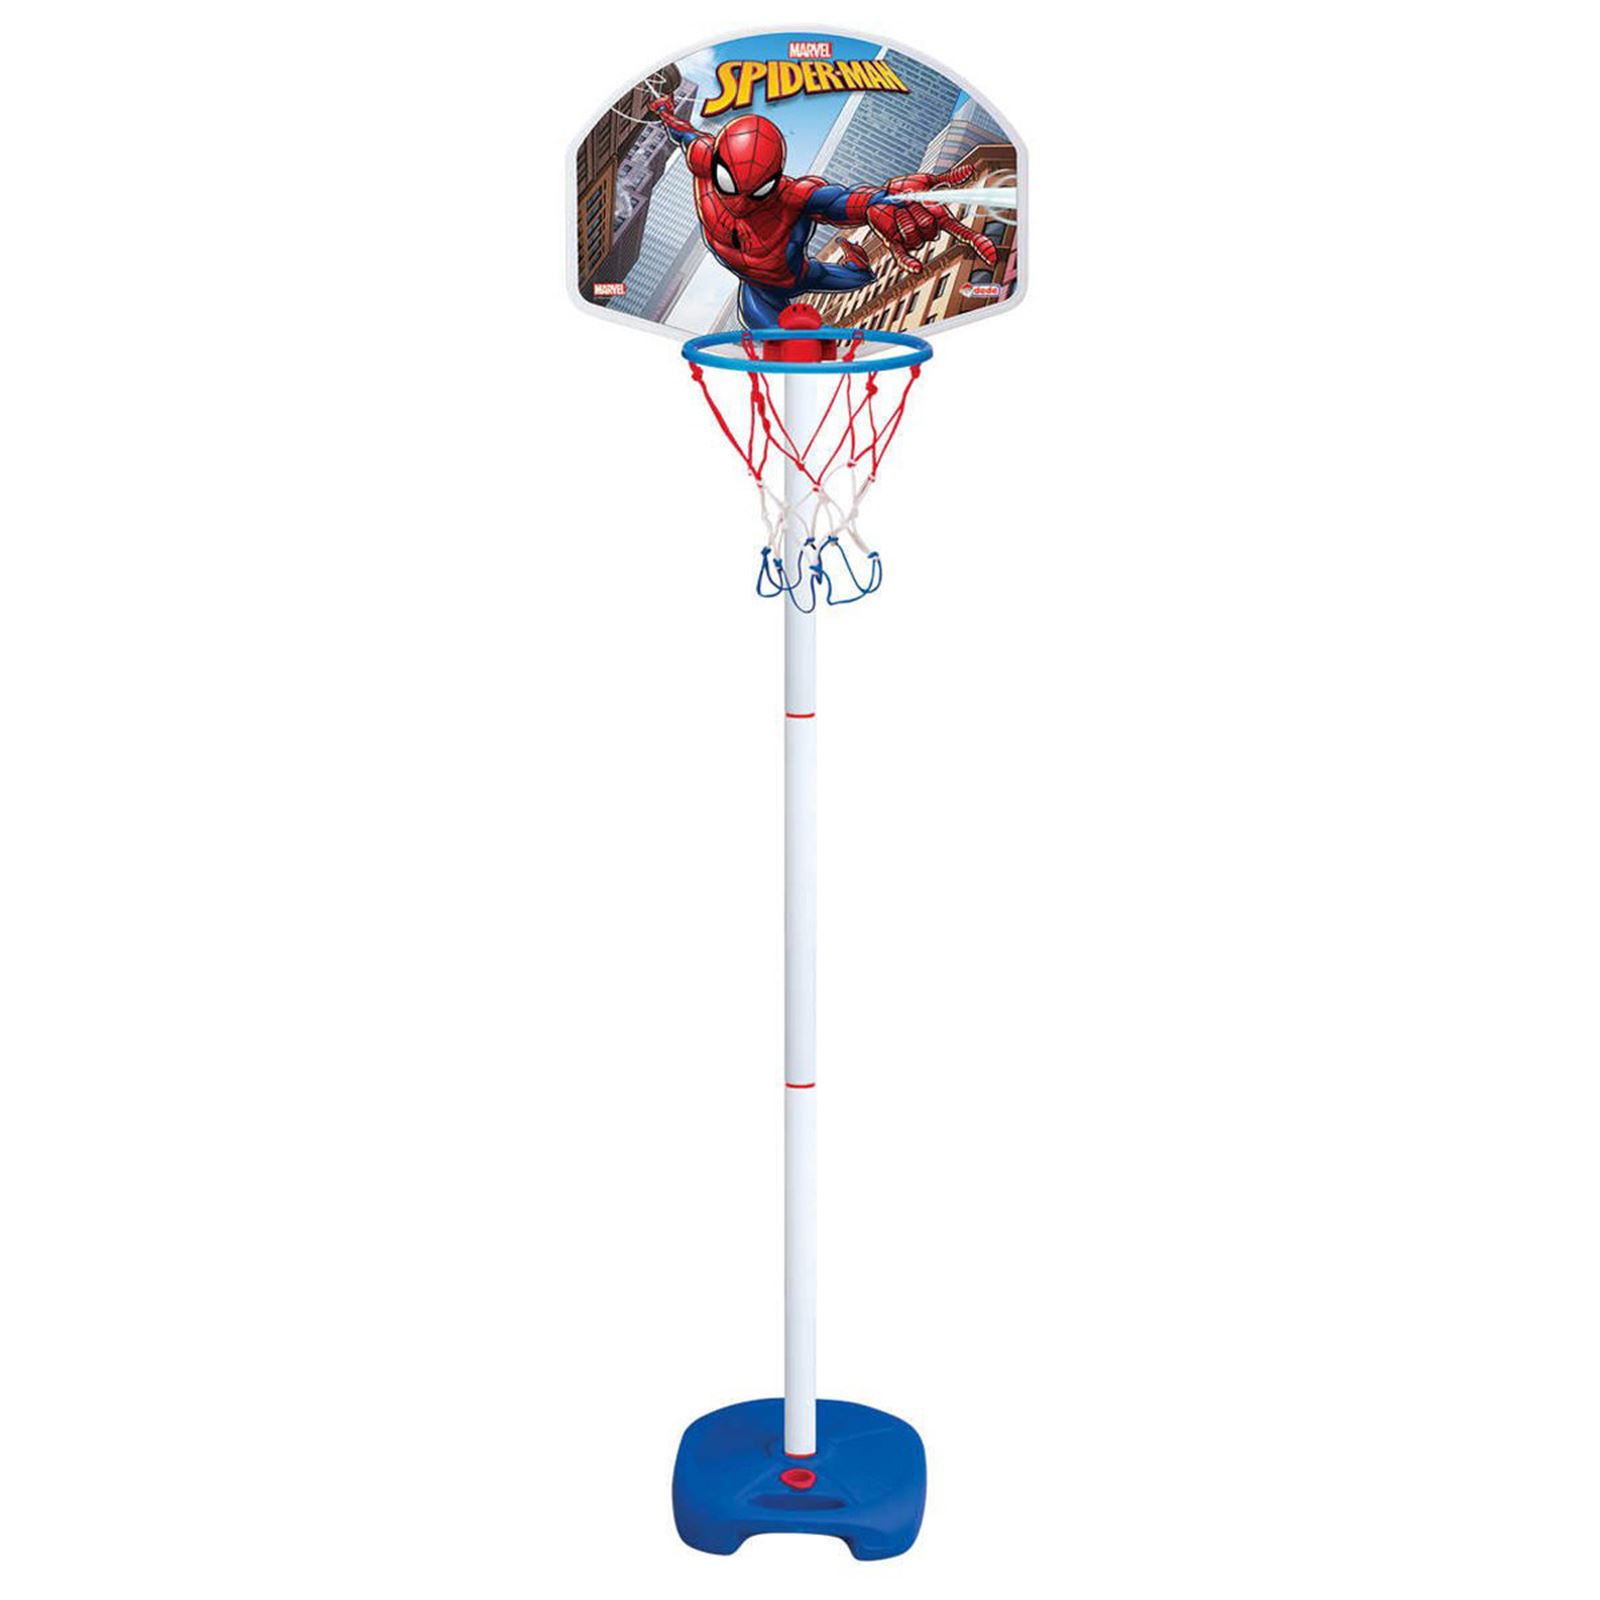 Spiderman Oyuncak Ayaklı Basketbol seti 3+ Yaş Mavi